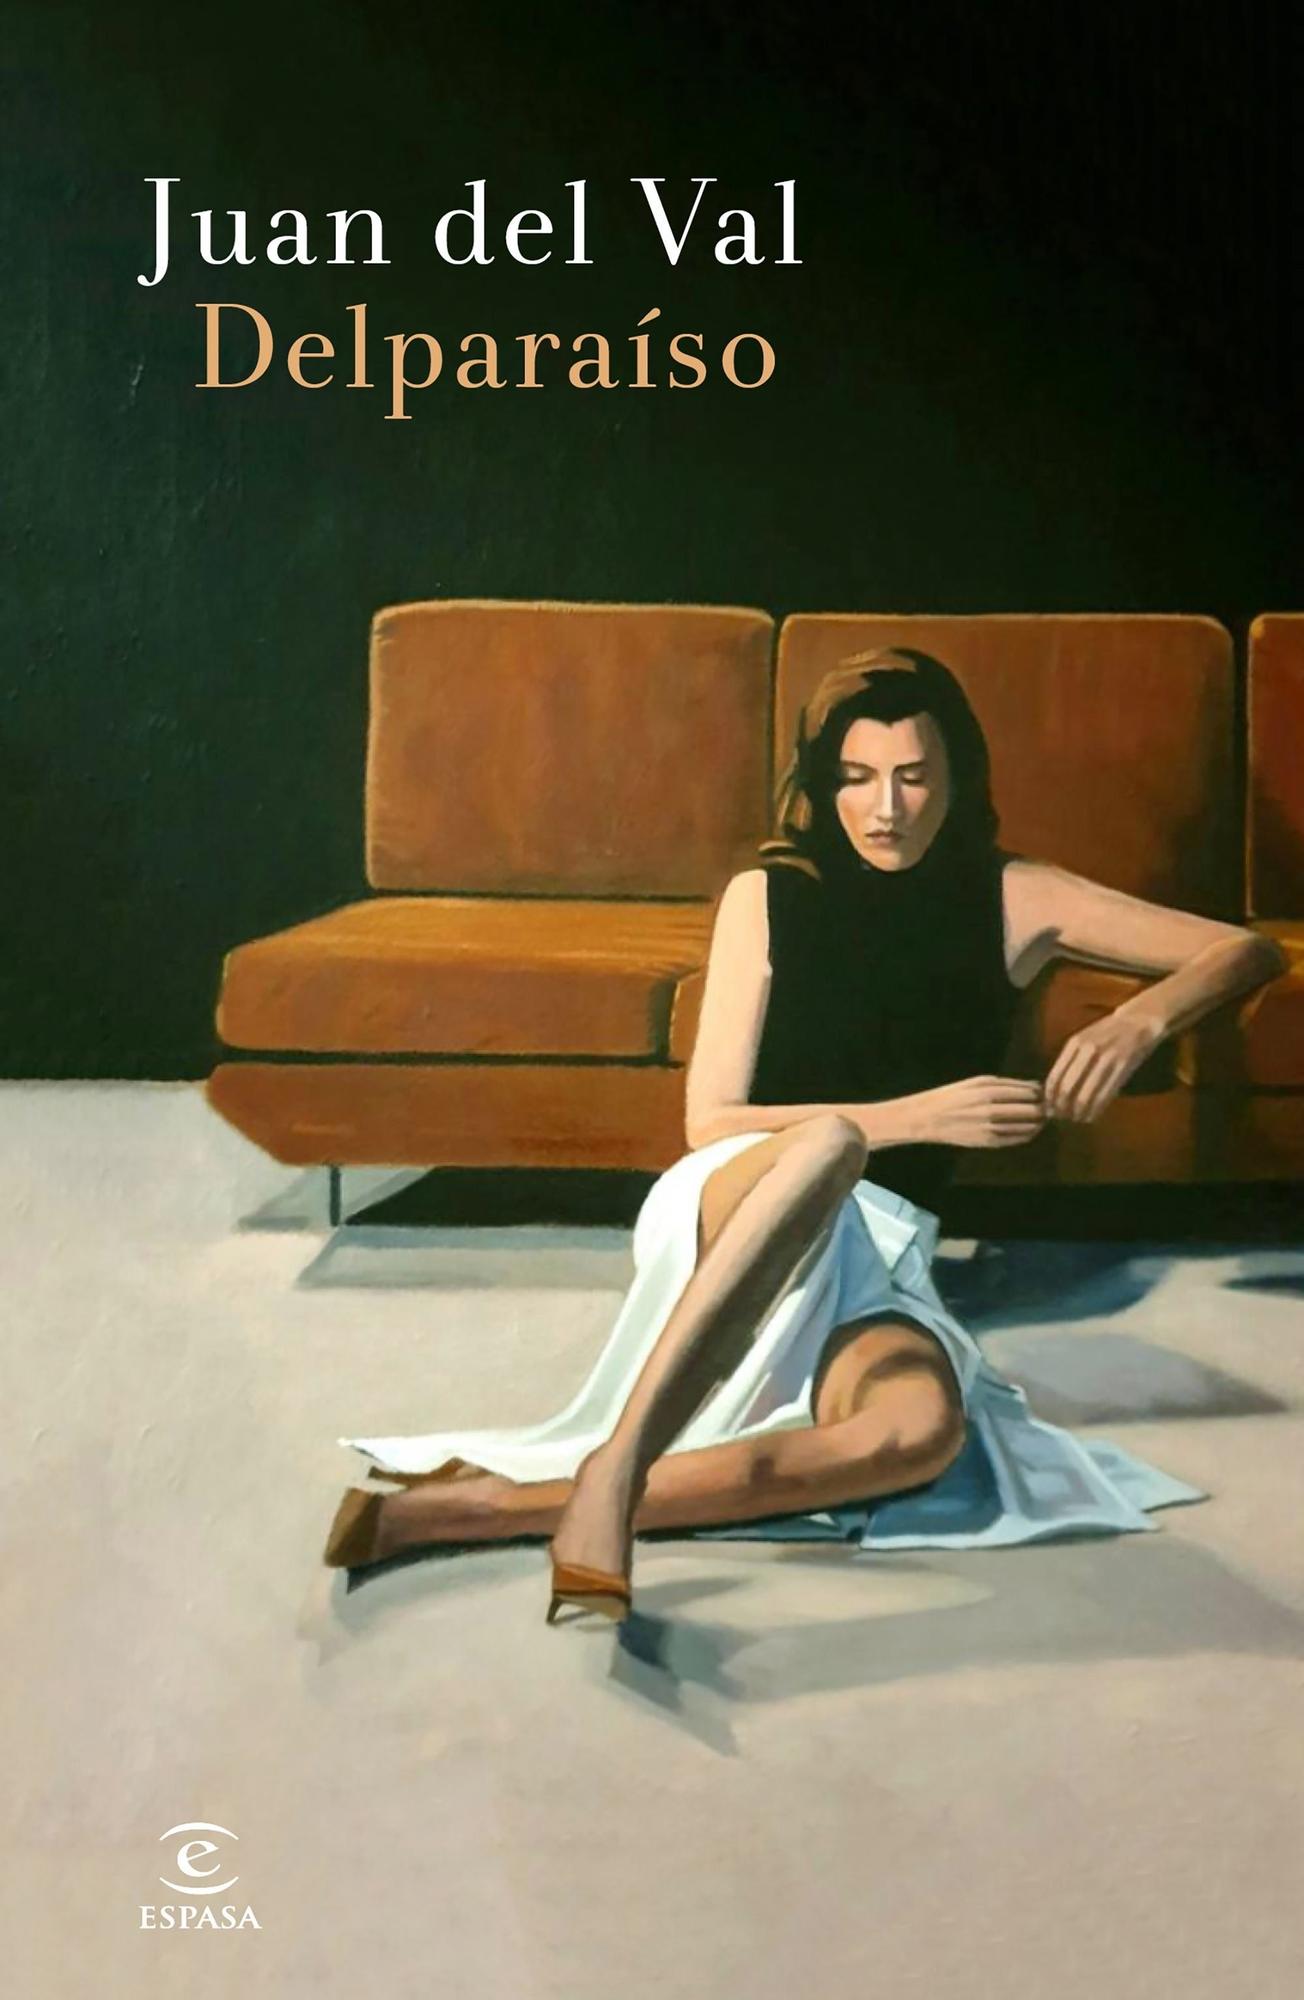 Delparaíso, de Juan del Val (9,49 euros)